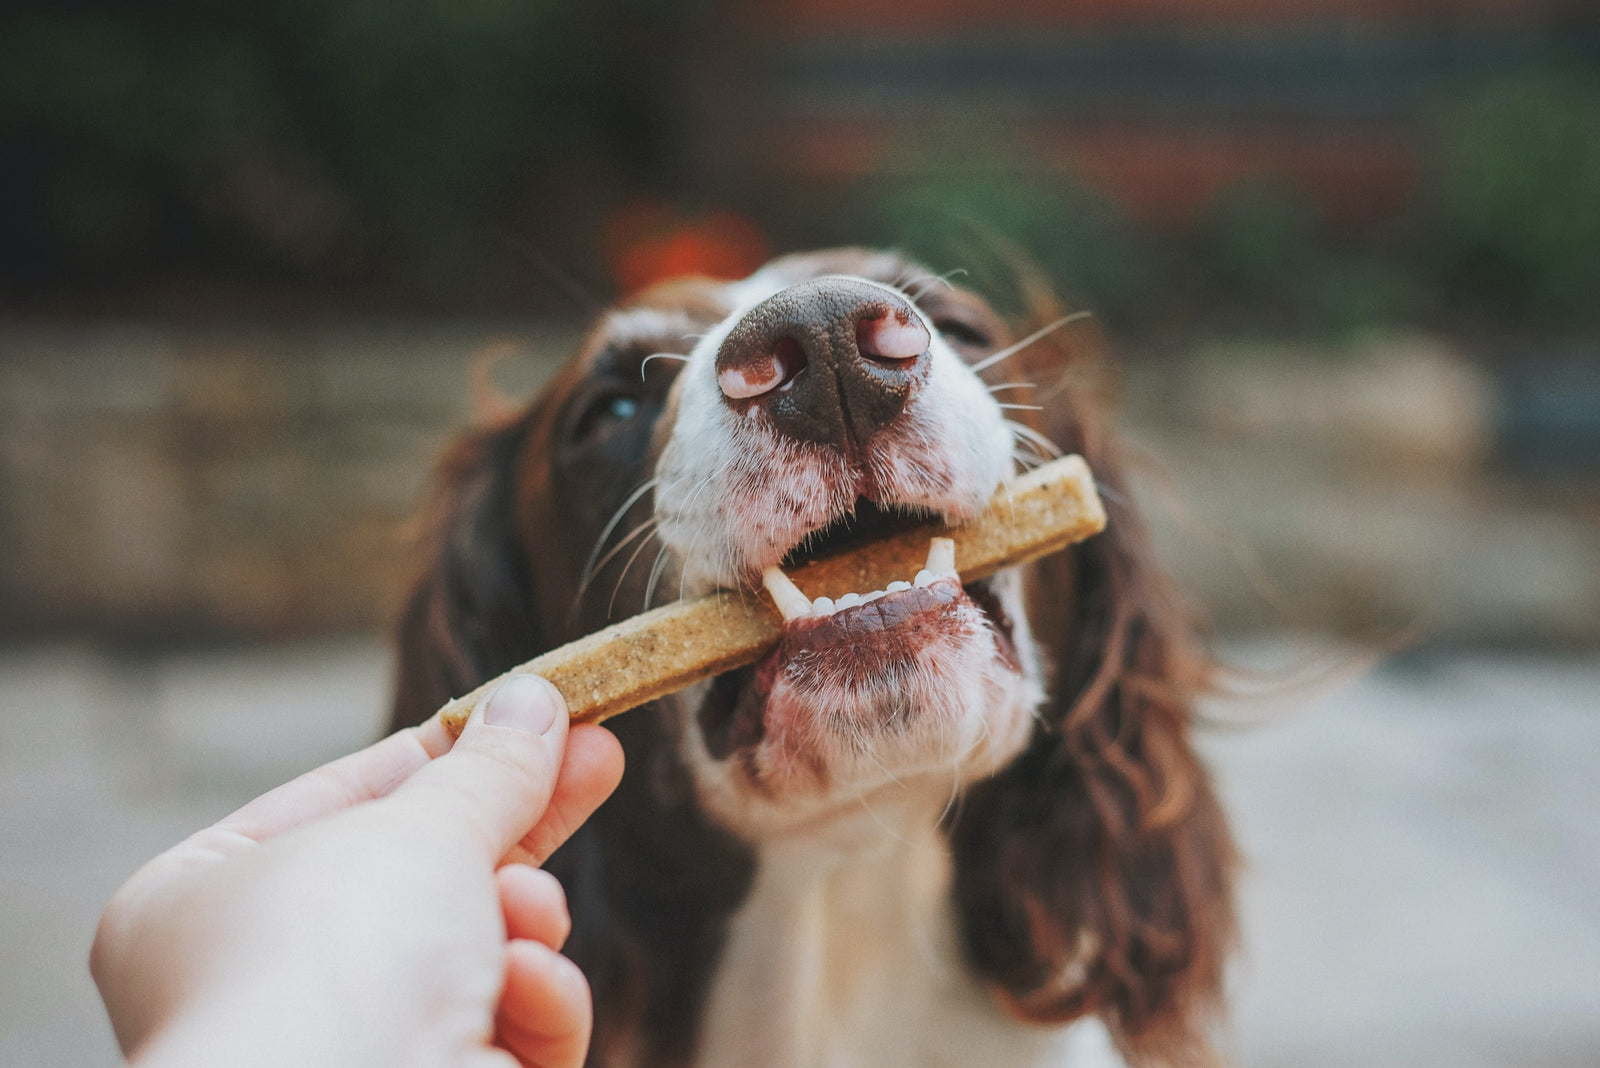 Dog eating treat